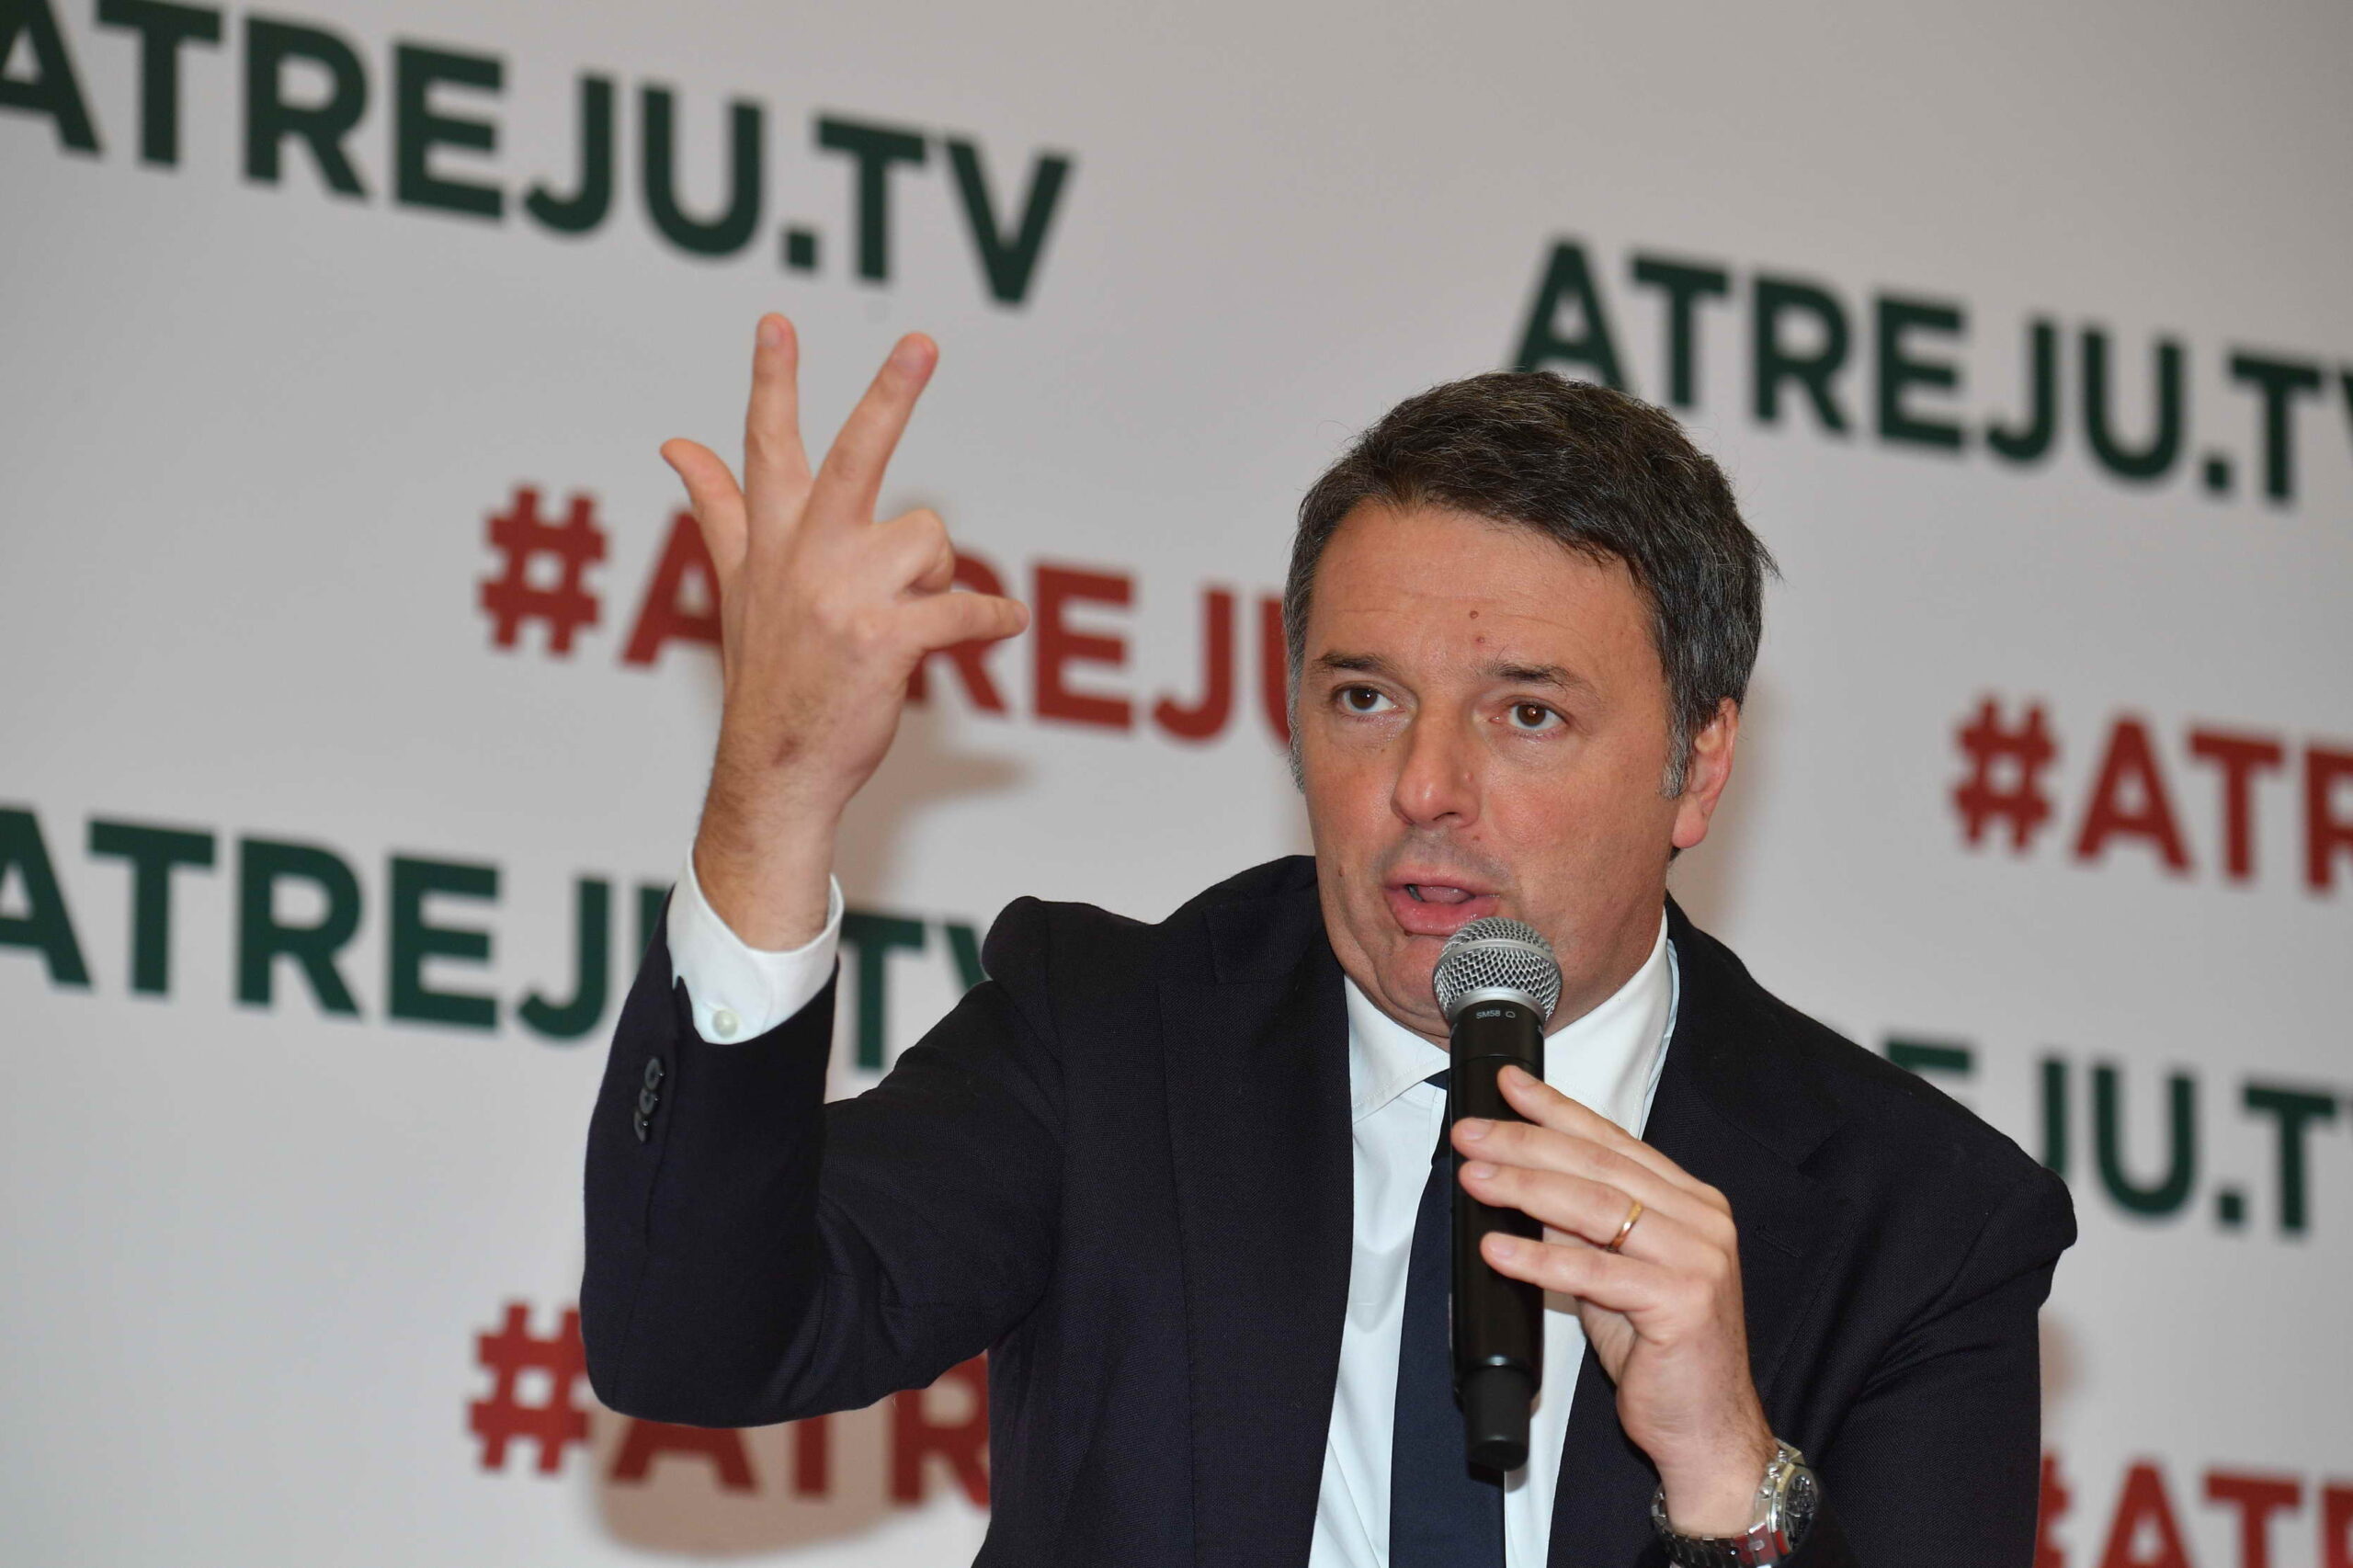 Matteo Renzi ad Atreju: "Fiero di non essere uno di voi, ma sulla Giustizia siamo vicini..."